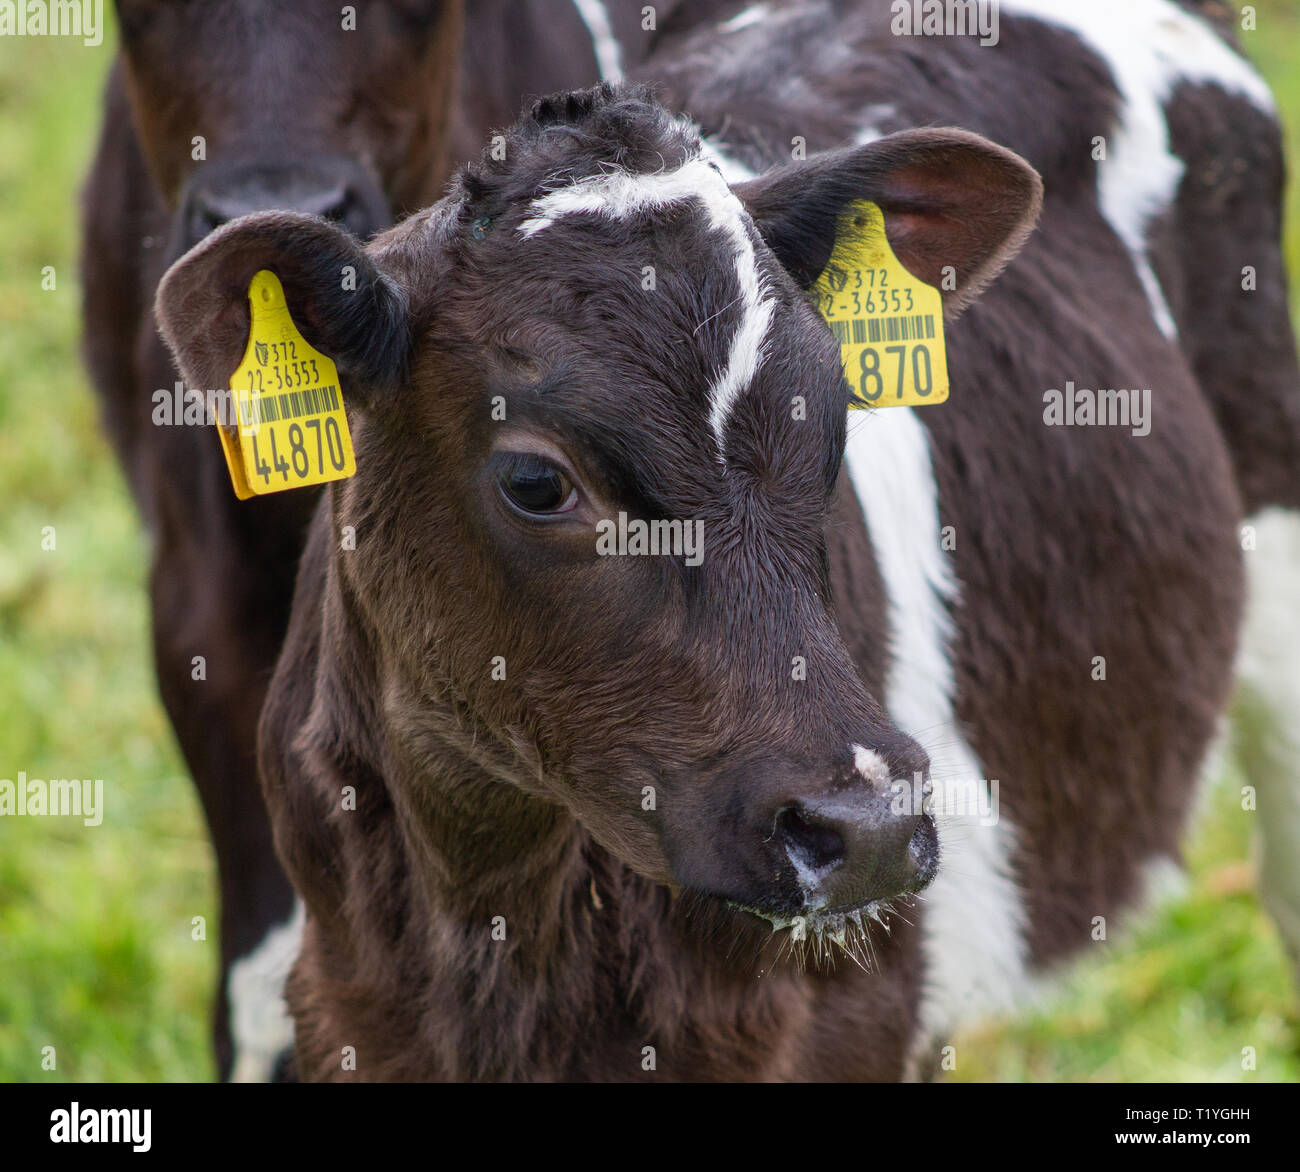 Castlehaven, West Cork, Irlanda, 29 Marzo 2019 Questo anni nuovi vitelli fuori della stalla per la prima volta. Mai visto o stato sull'erba prima di trovare tutto molto eccitante. La calda primavera meteo ha mantenuto l'erba cresce presto per loro. Credito: aphperspective/Alamy Live News Foto Stock